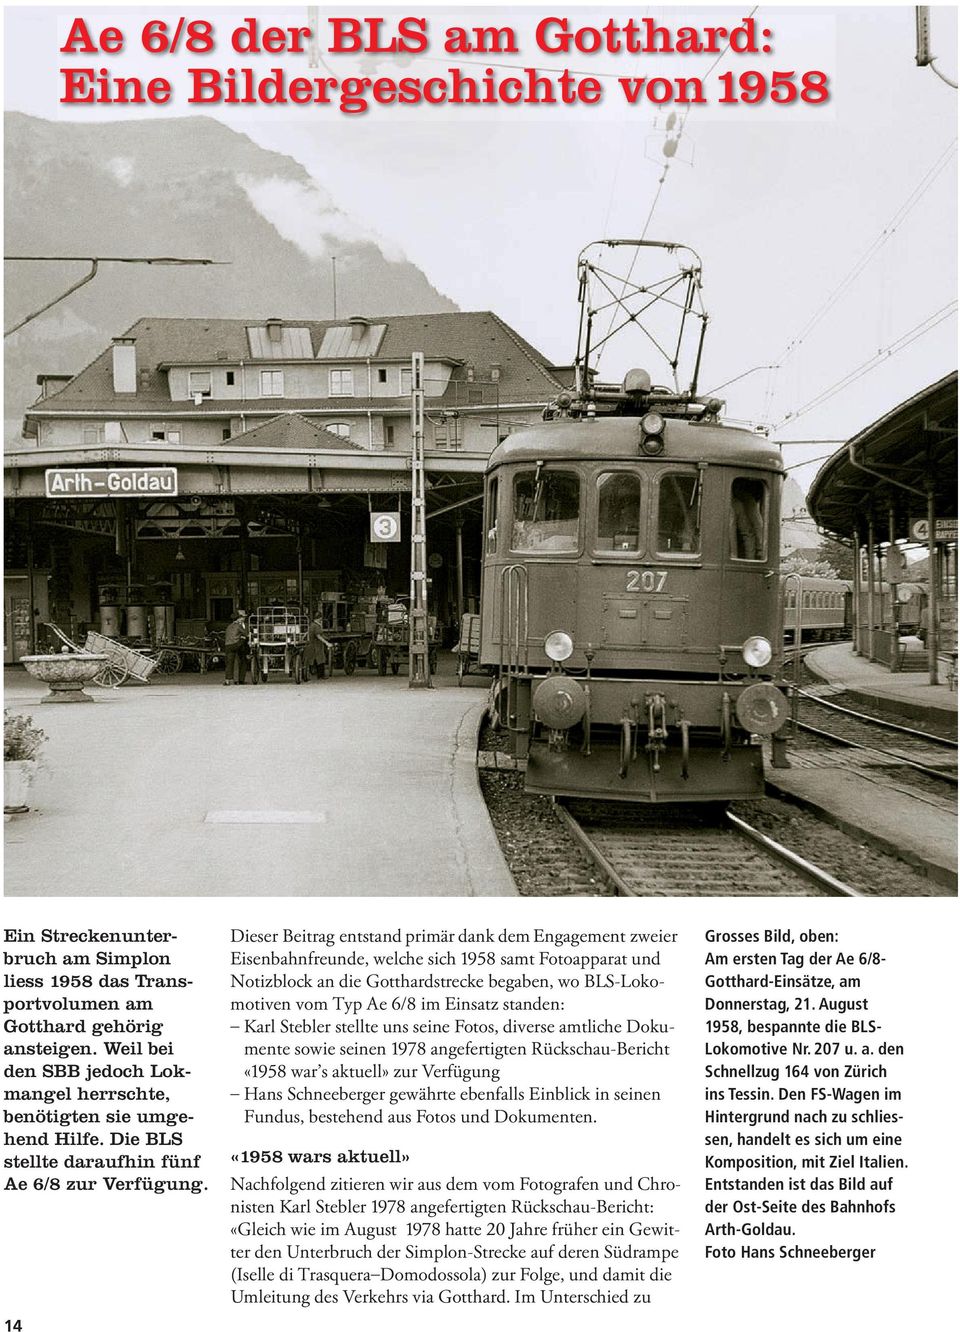 14 Dieser Beitrag entstand primär dank dem Engagement zweier Eisenbahnfreunde, welche sich 1958 samt Fotoapparat und Notizblock an die Gotthardstrecke begaben, wo BLS-Lokomotiven vom Typ Ae 6/8 im